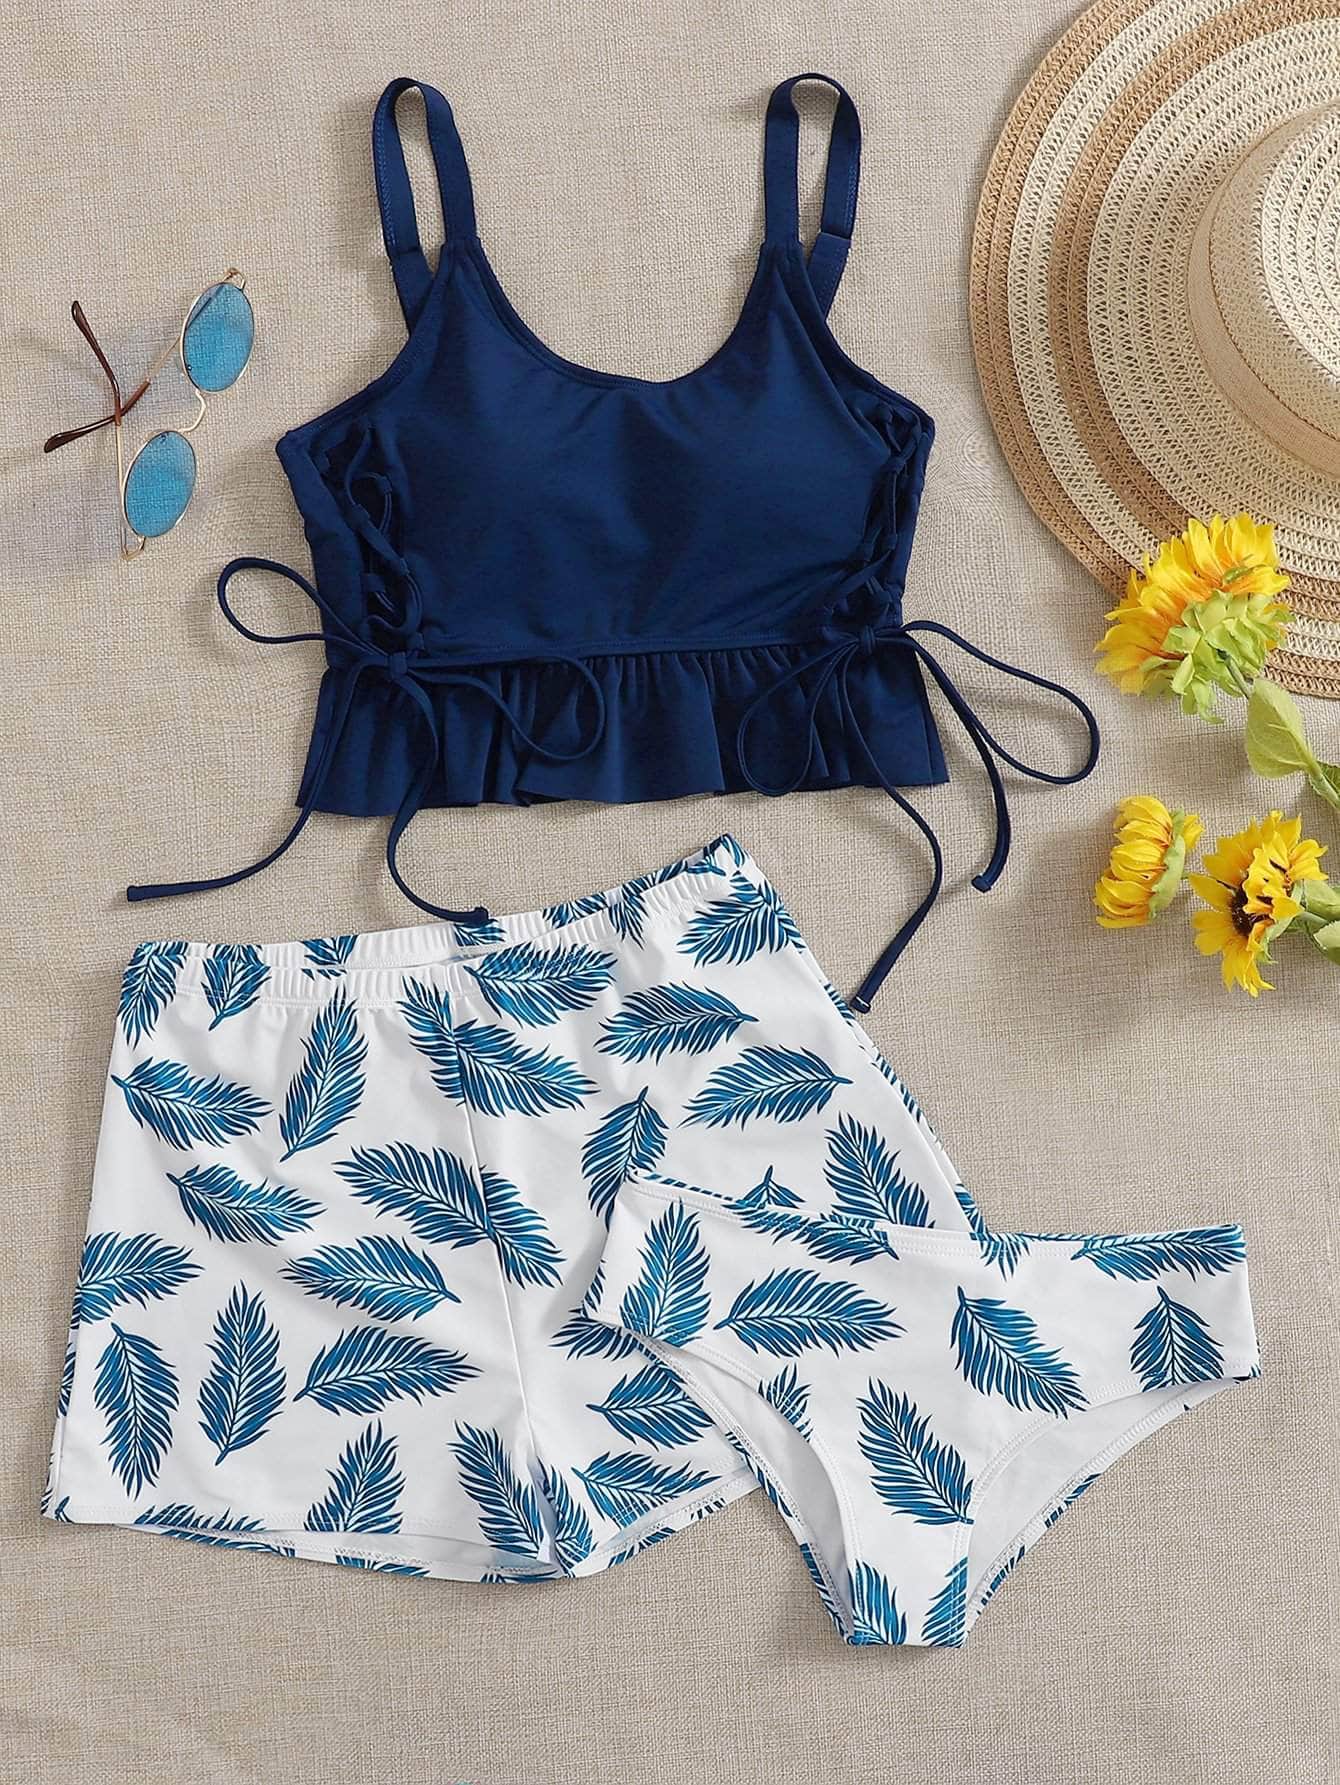 Muybonita.co Tankinis2 Azul y blanco / S 3 piezas vestido de baño bikini bajo fruncido con cordón